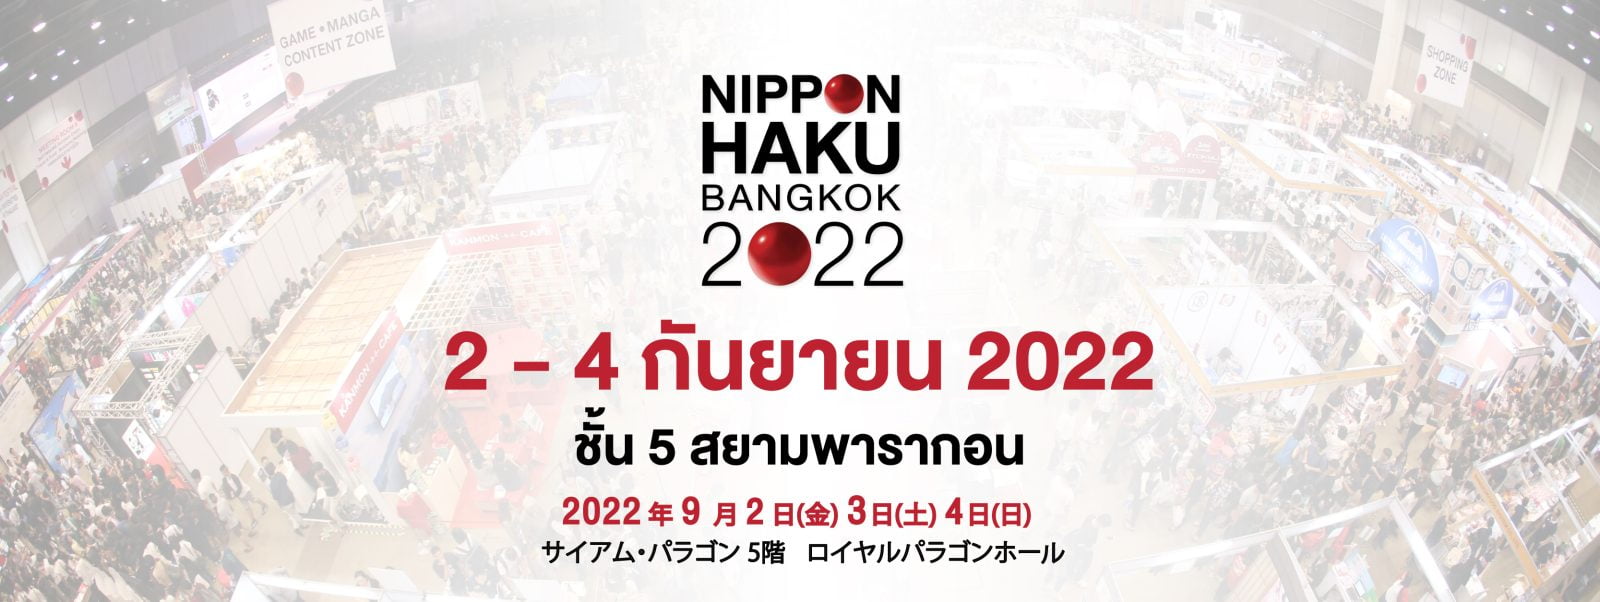 [รายละเอียด] งานมหกรรมญี่ปุ่นนิปปอนฮาคุ (NIPPON HAKU BANGKOK 2022)